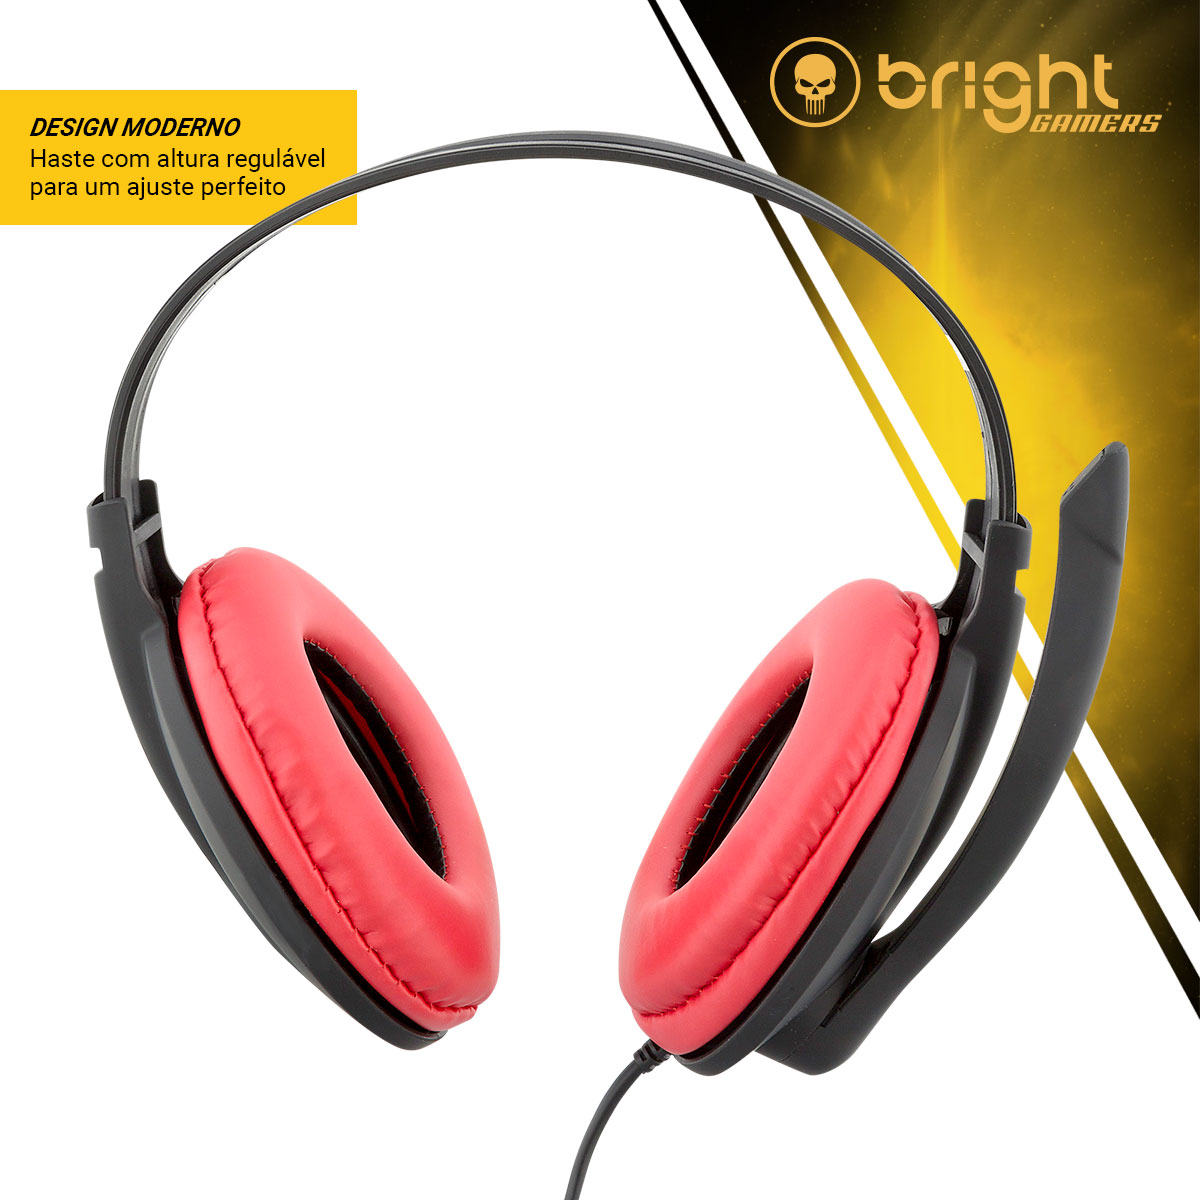 Fone de Ouvido Headset Gamer P2 Super Bass Vermelho e Preto 206 Bright - BRIGHT